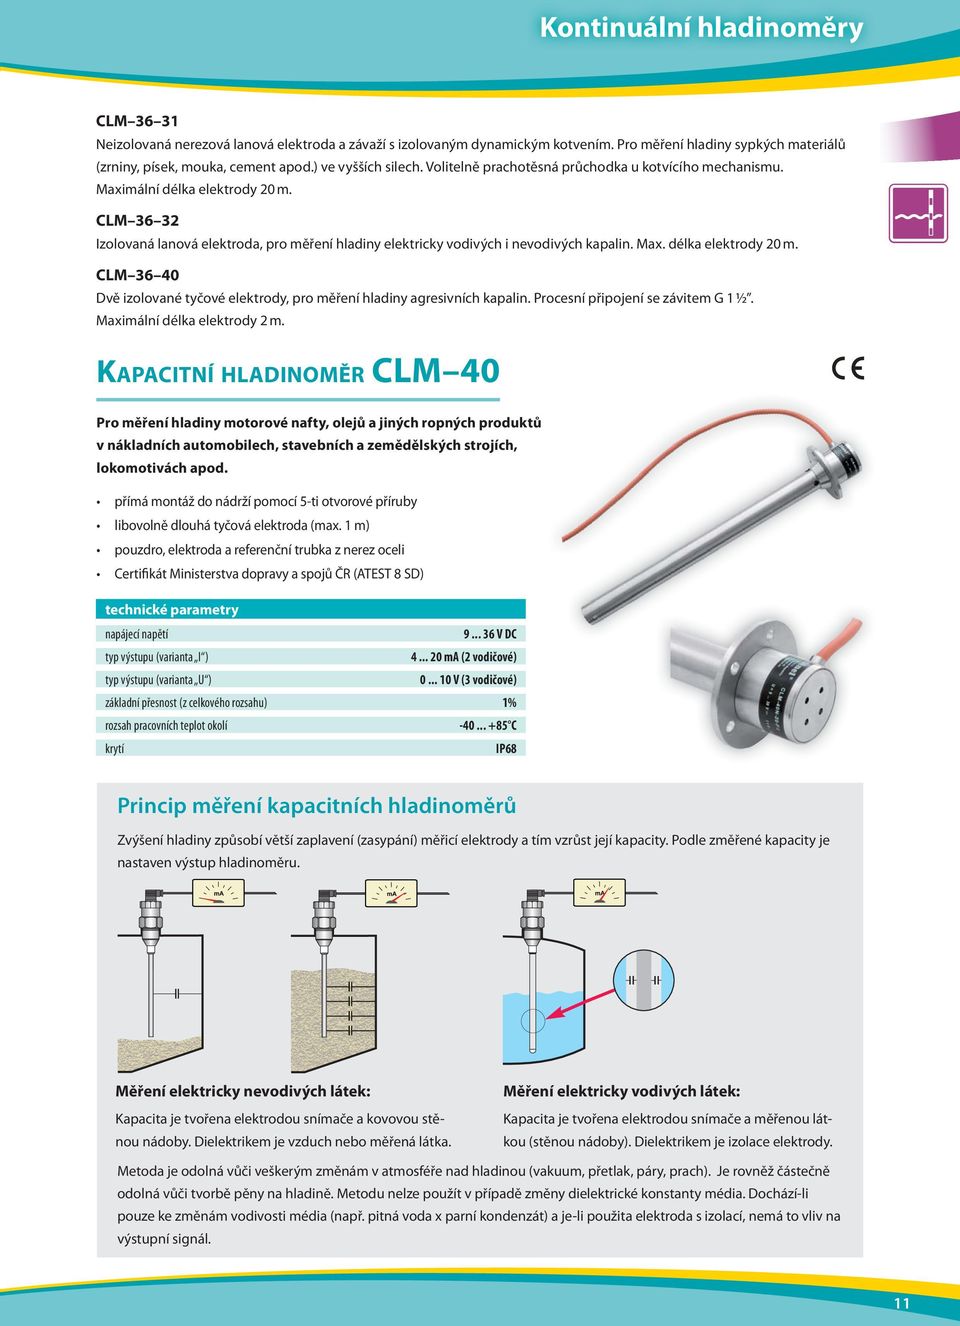 CLM 36 32 Izolovaná lanová elektroda, pro měření hladiny elektricky vodivých i nevodivých kapalin. Max. délka elektrody 20 m.